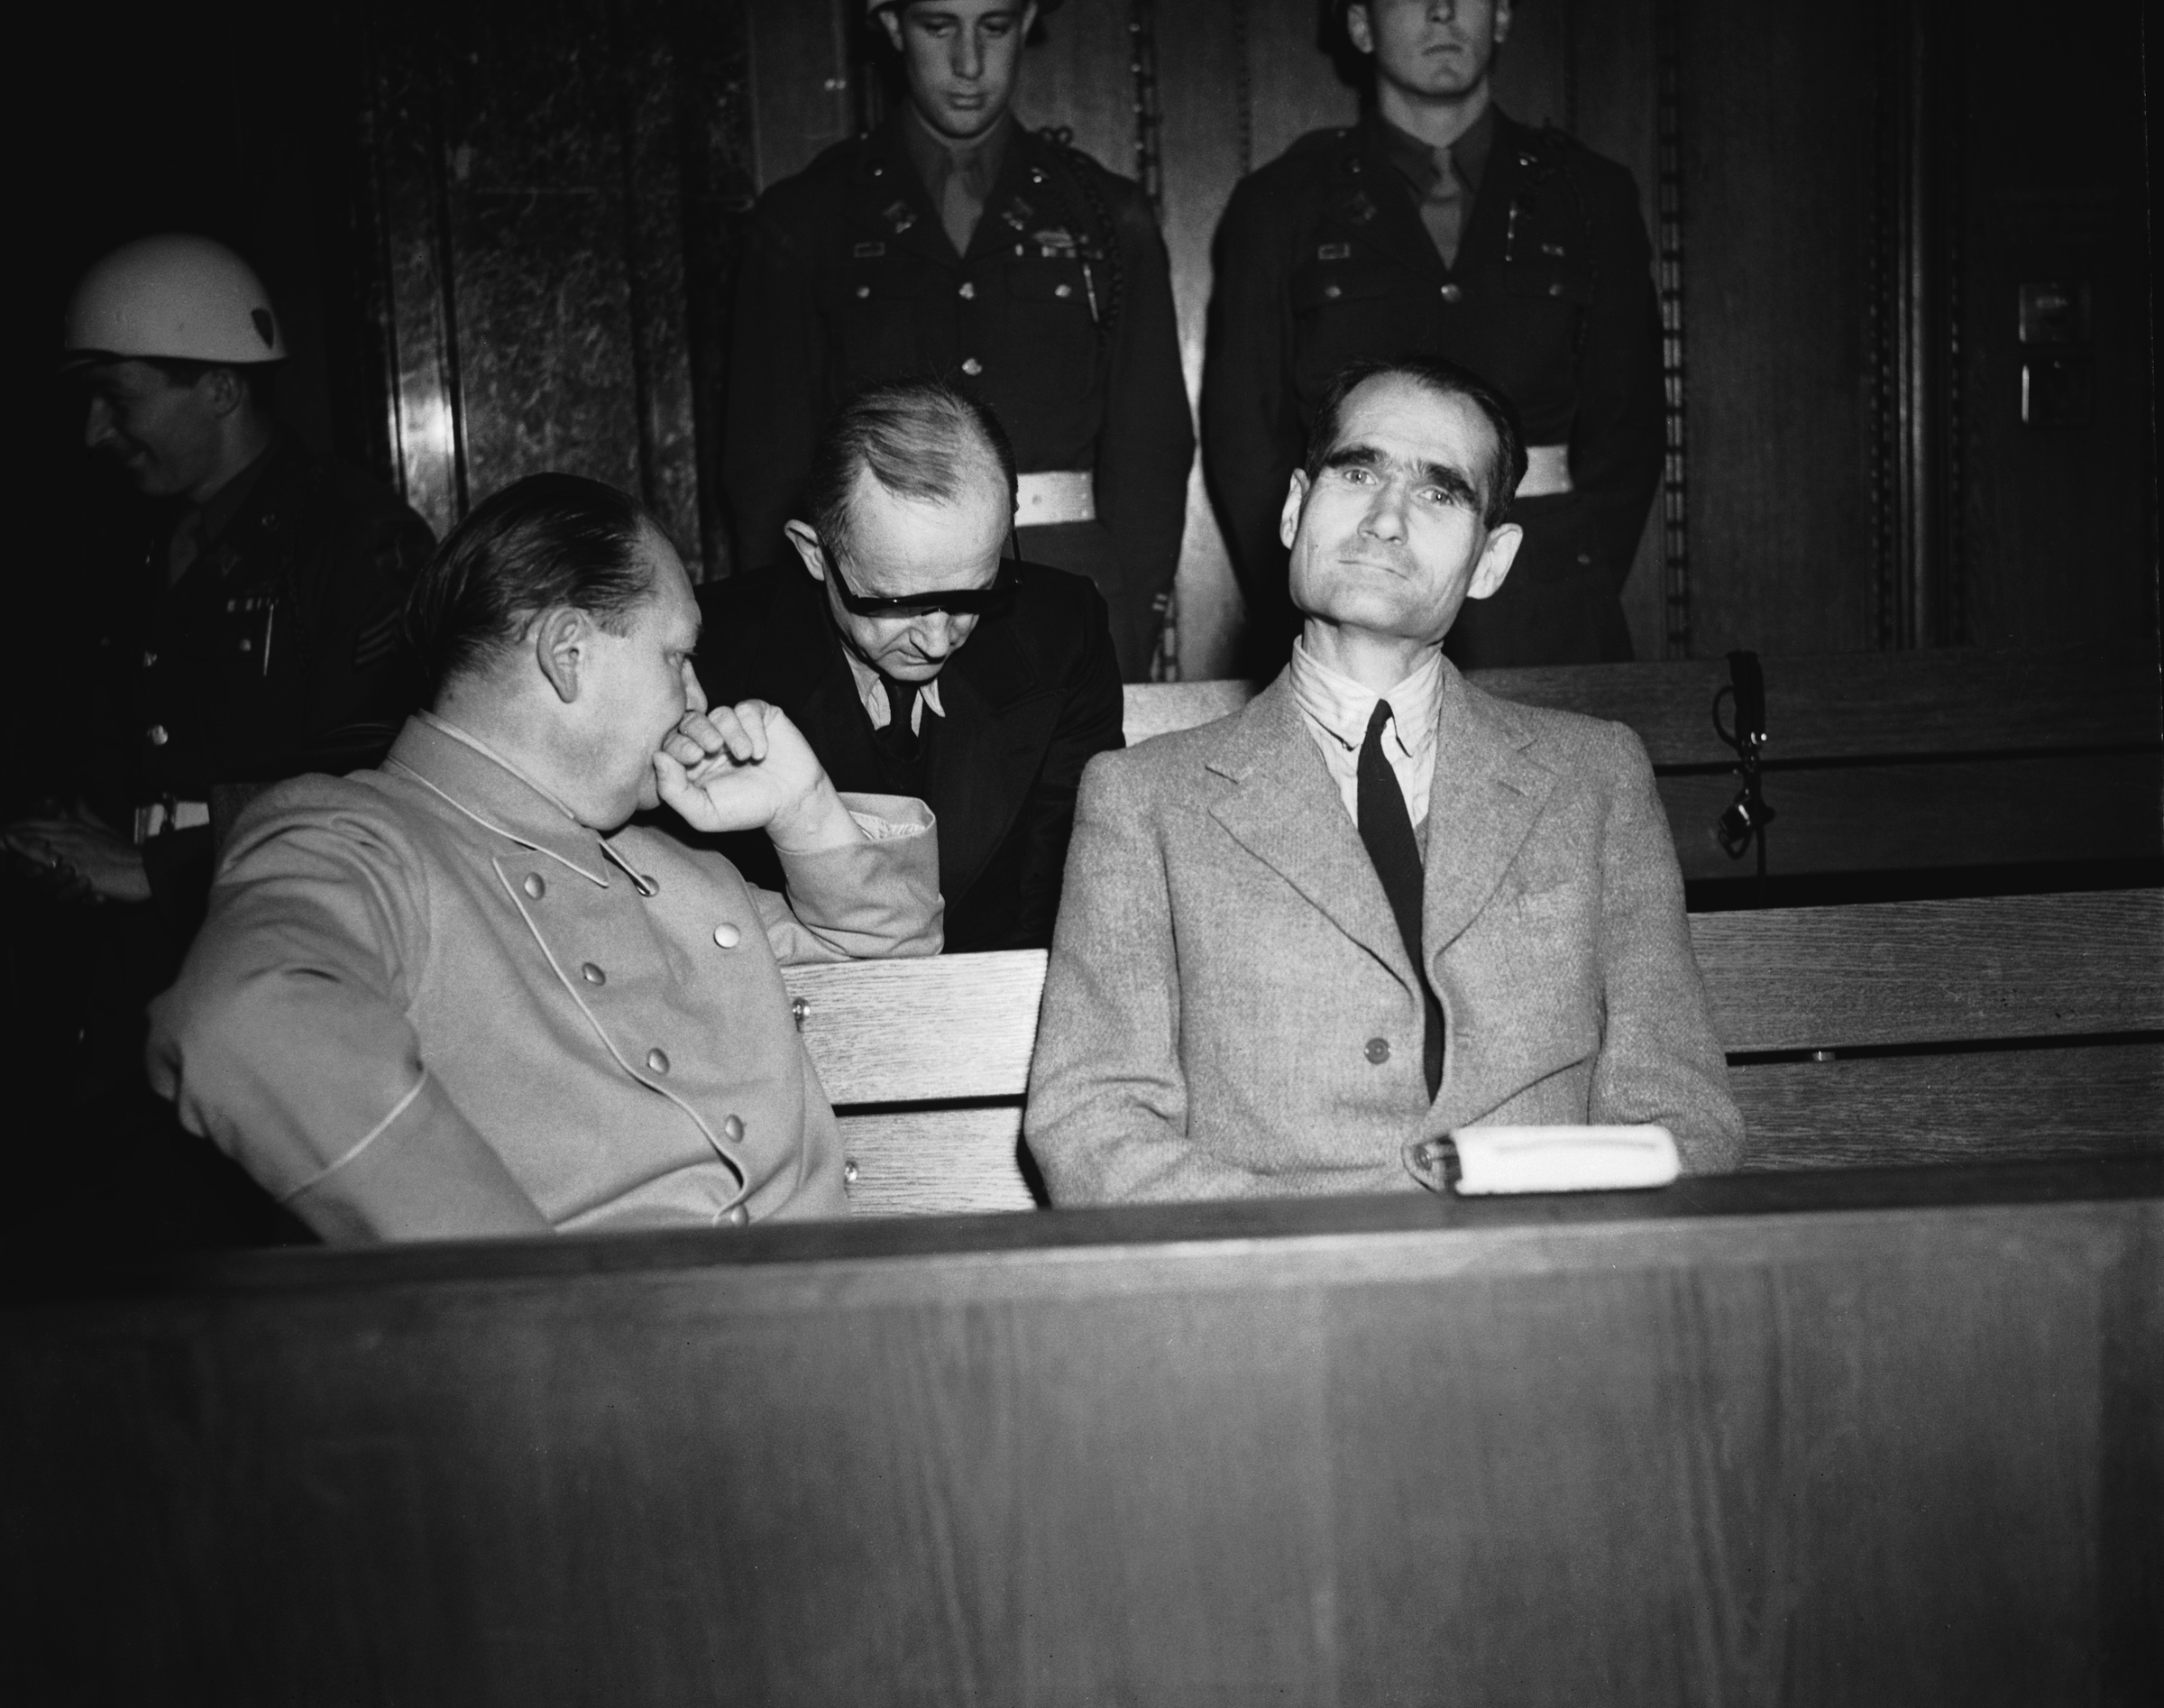 Бывшие нацистские военные и политические лидеры Герман Геринг (слева) и Рудольф Гесс. Фото © Getty Images / Chris Ware / Keystone / Hulton Archive